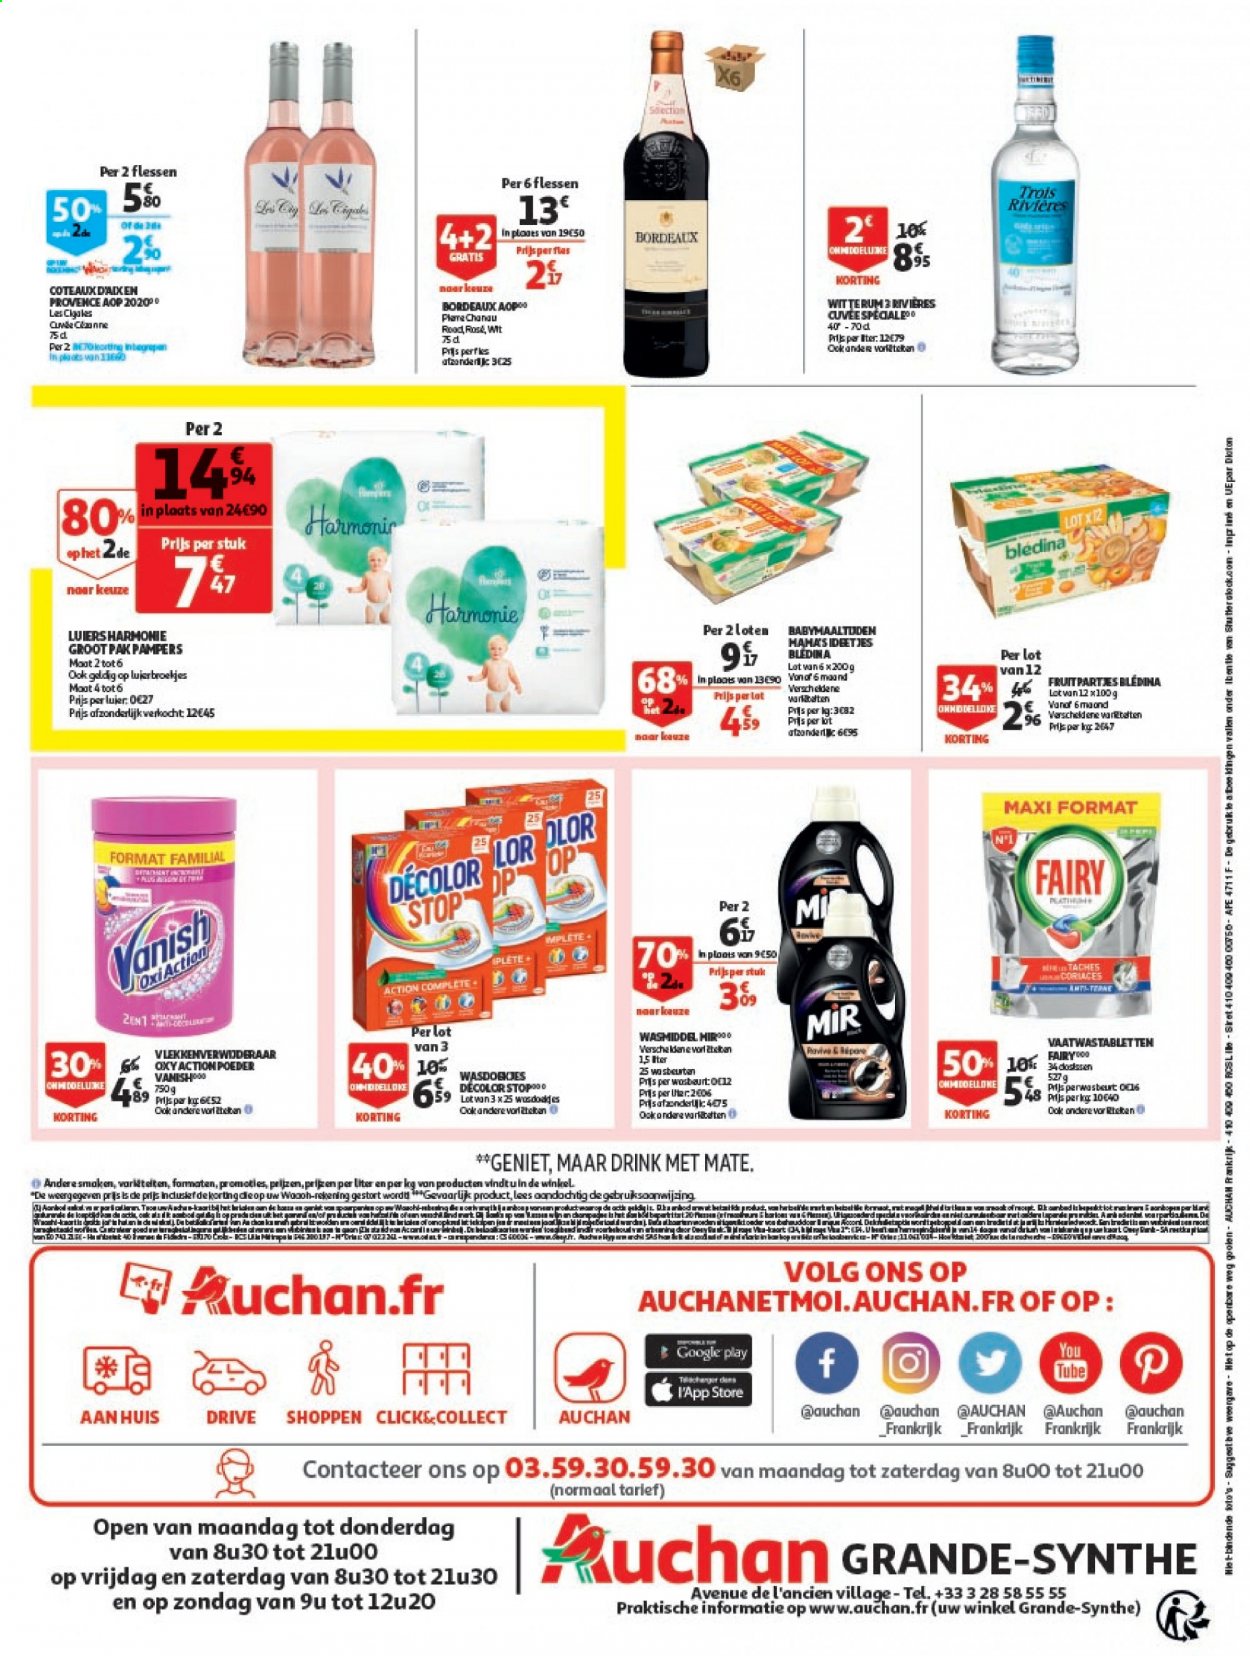 thumbnail - Catalogue Auchan - 06/04/2021 - 13/04/2021 - Produits soldés - Bordeaux, vin rouge, Blédina, Pampers, Vanish, Mir, Décolor Stop, Fairy. Page 2.